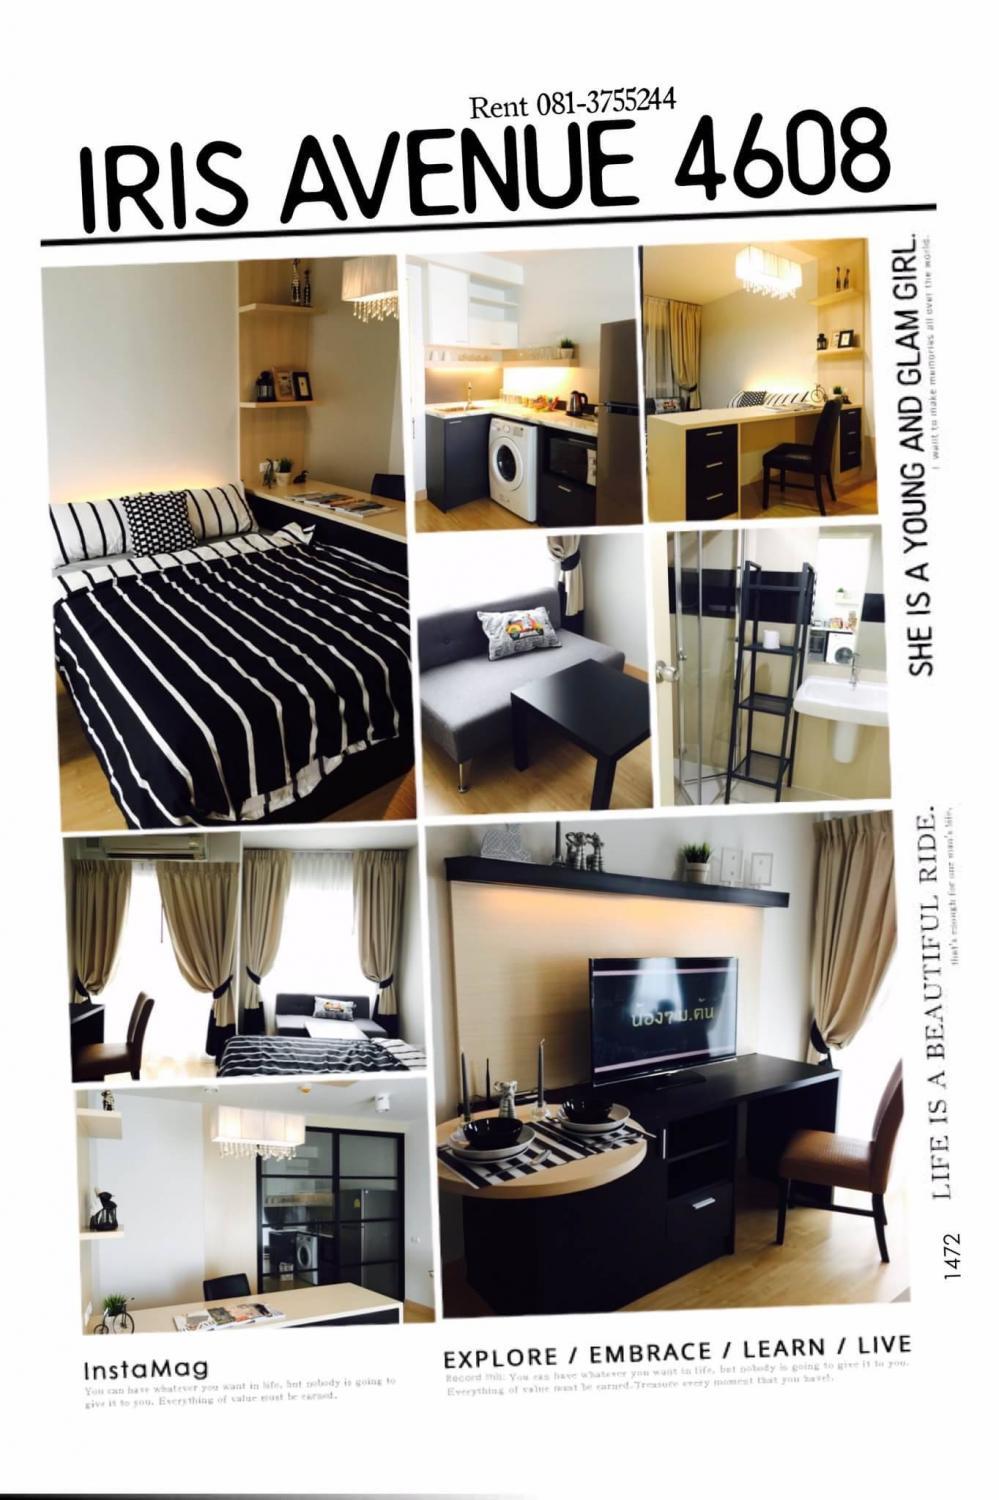 เช่าคอนโด ไอริส แอเวนิว อ่อนนุช-สุวรรณภูมิ คอนโดมิเนียม - Condo Rental IRIS Avenue Onnuch-Suvarnabhumi condominium - 519190